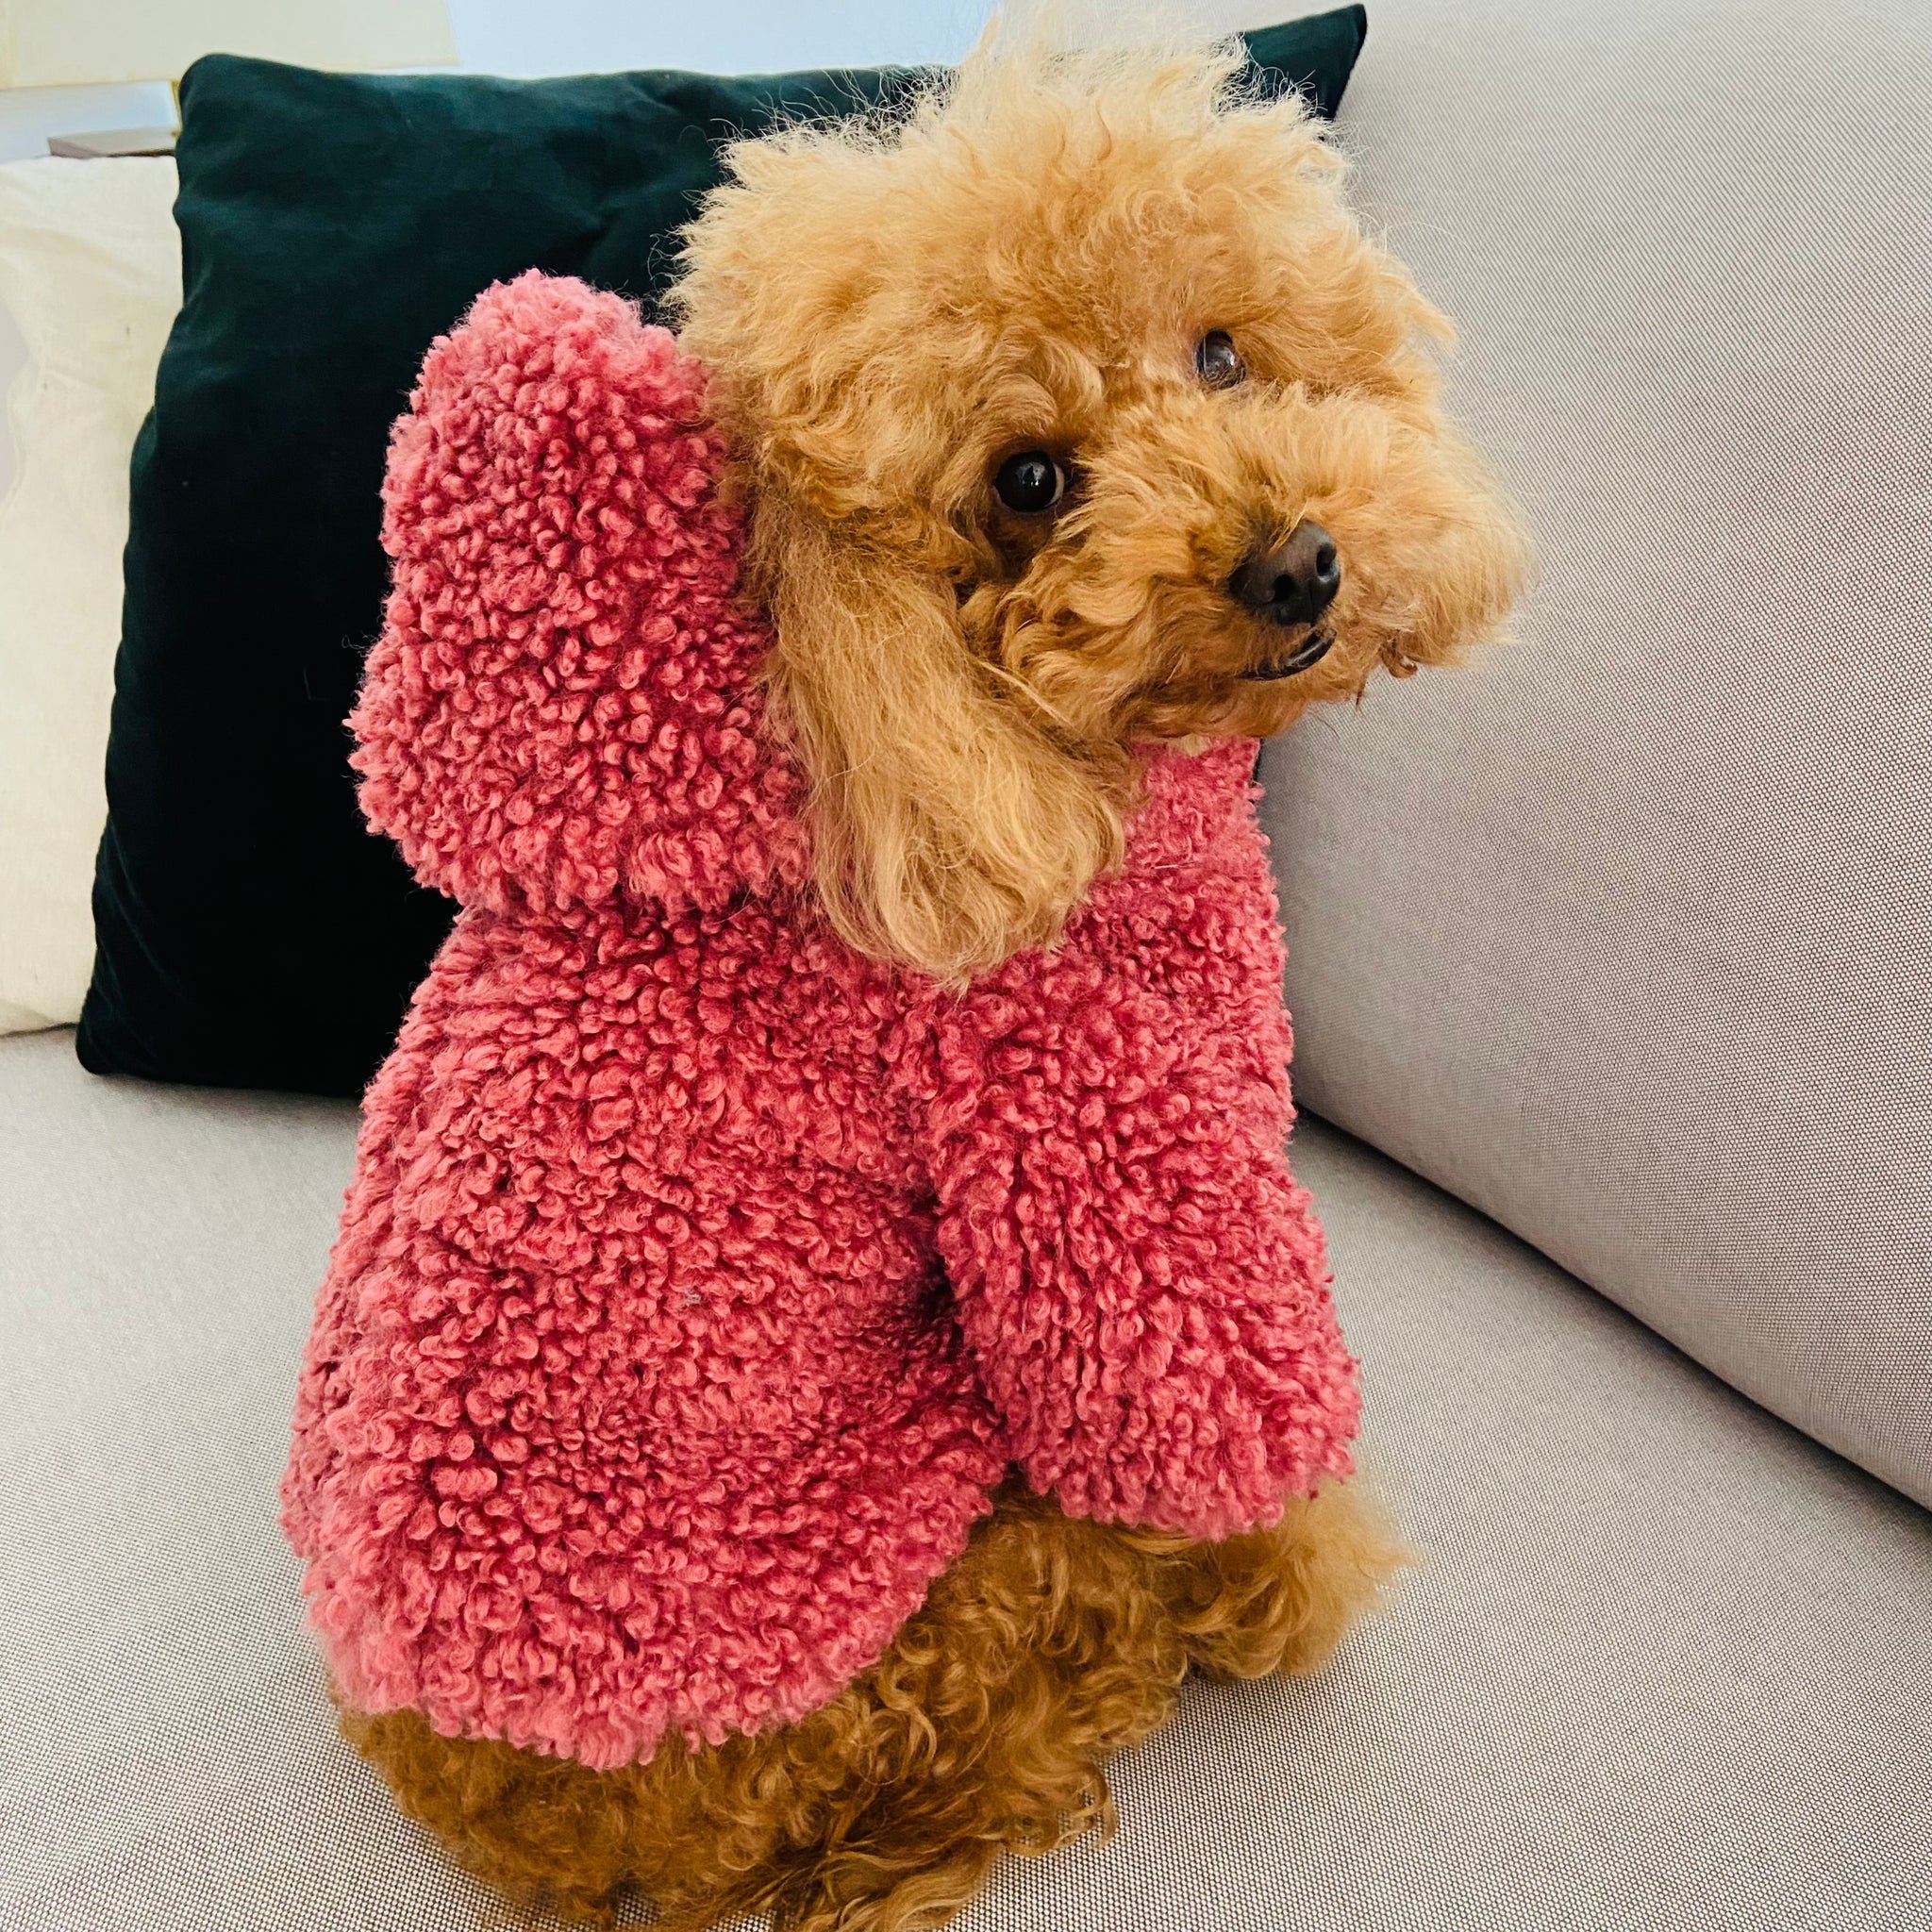 Giacca Teddy con cappuccio - Pink